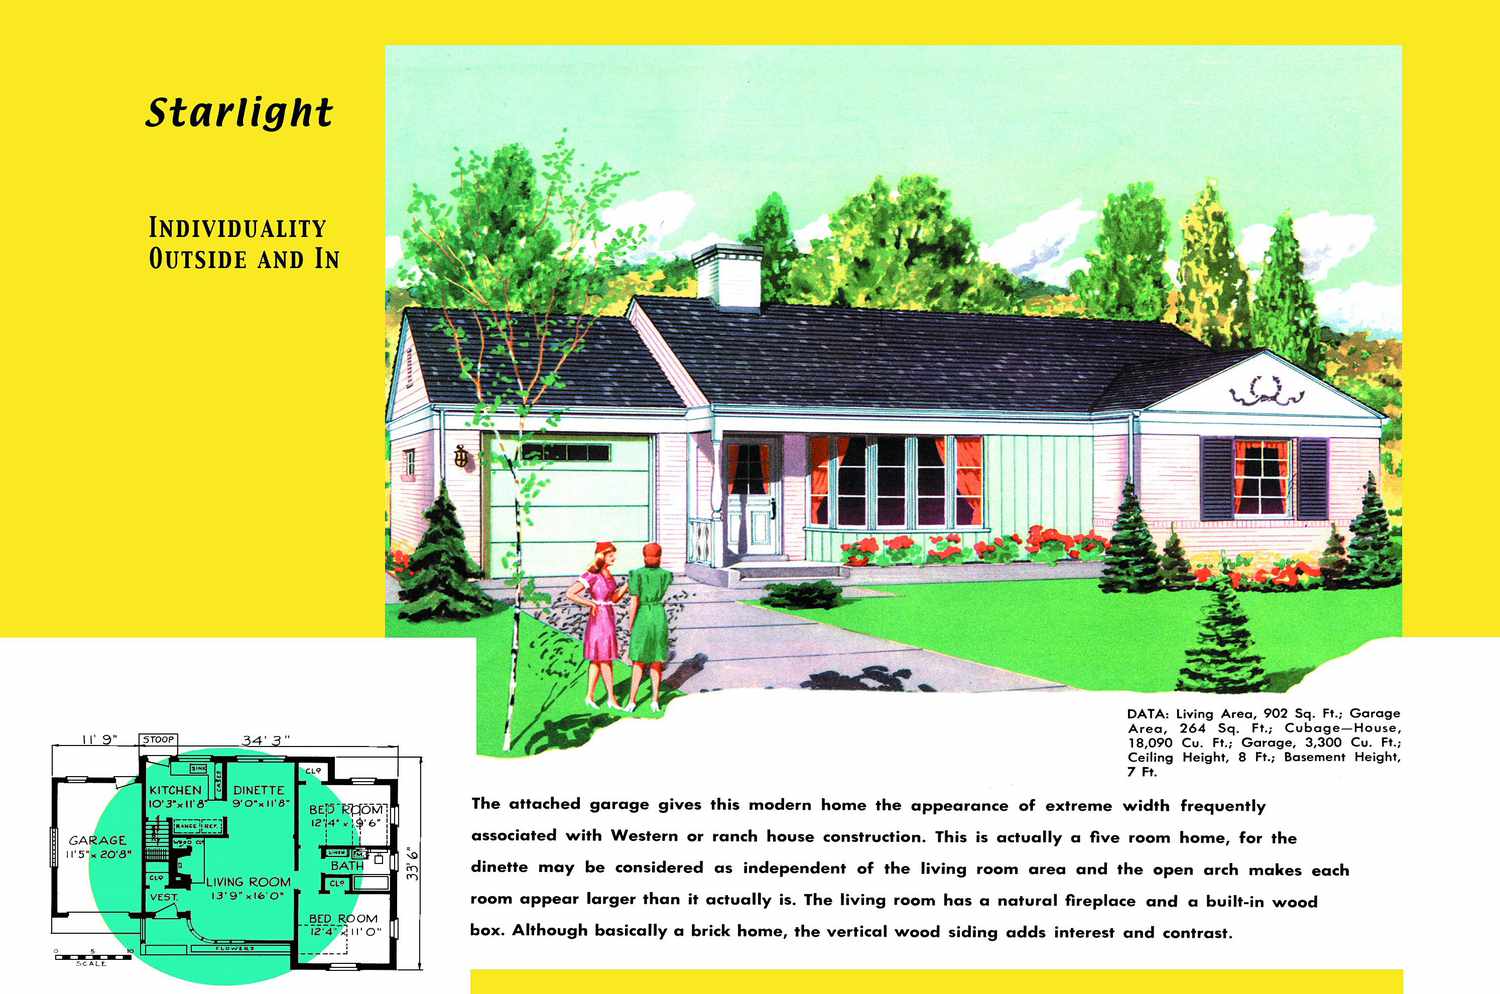 Grundriss und Rendering eines Hauses im Ranch-Stil aus den 1950er Jahren namens Starlight mit angebauter Garage